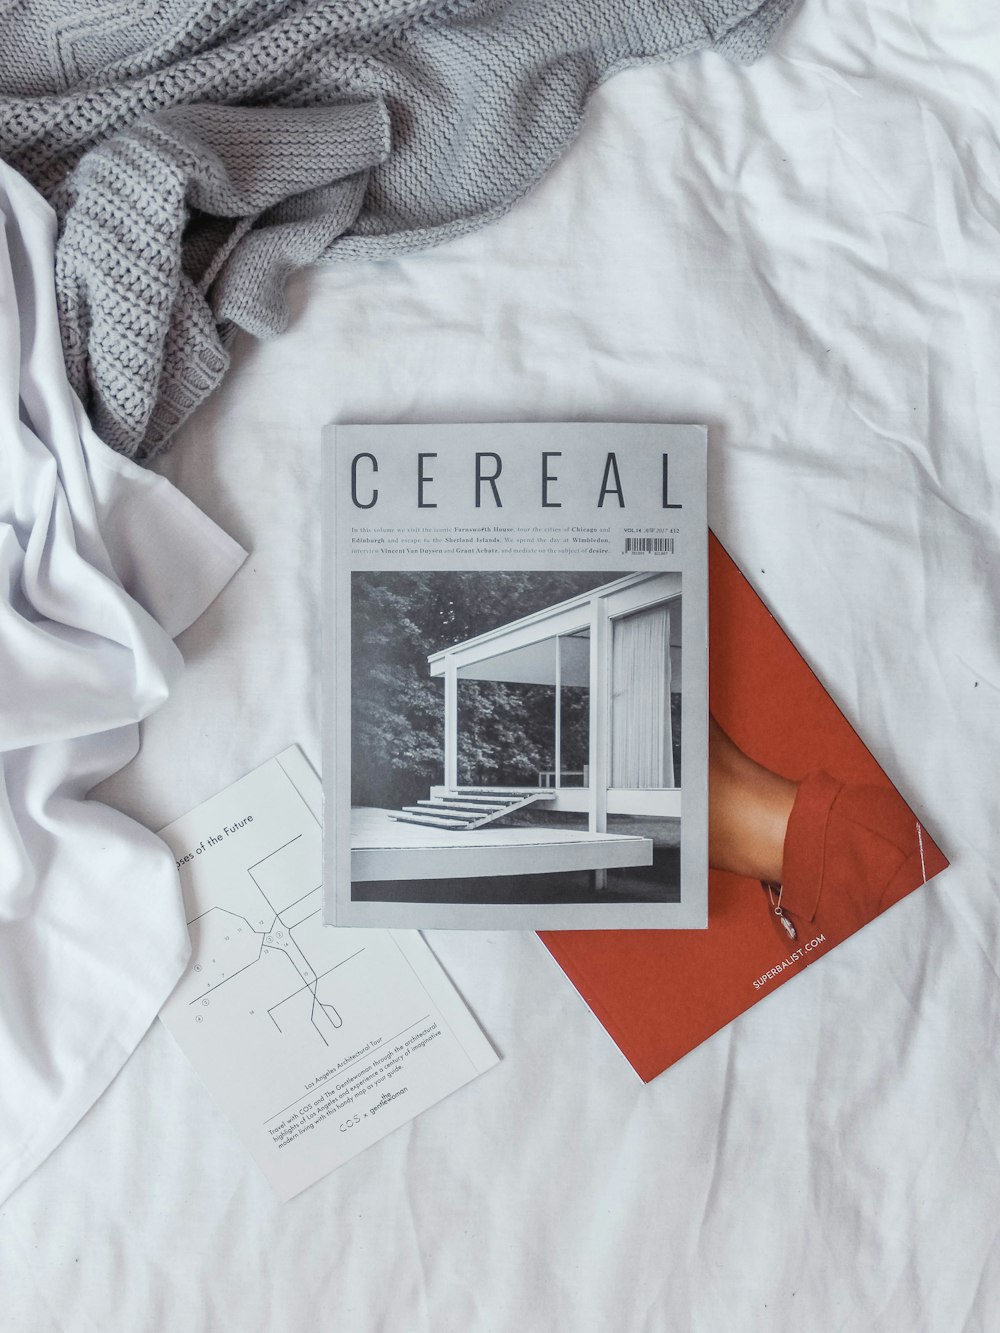 Libro de cereales sobre textil blanco